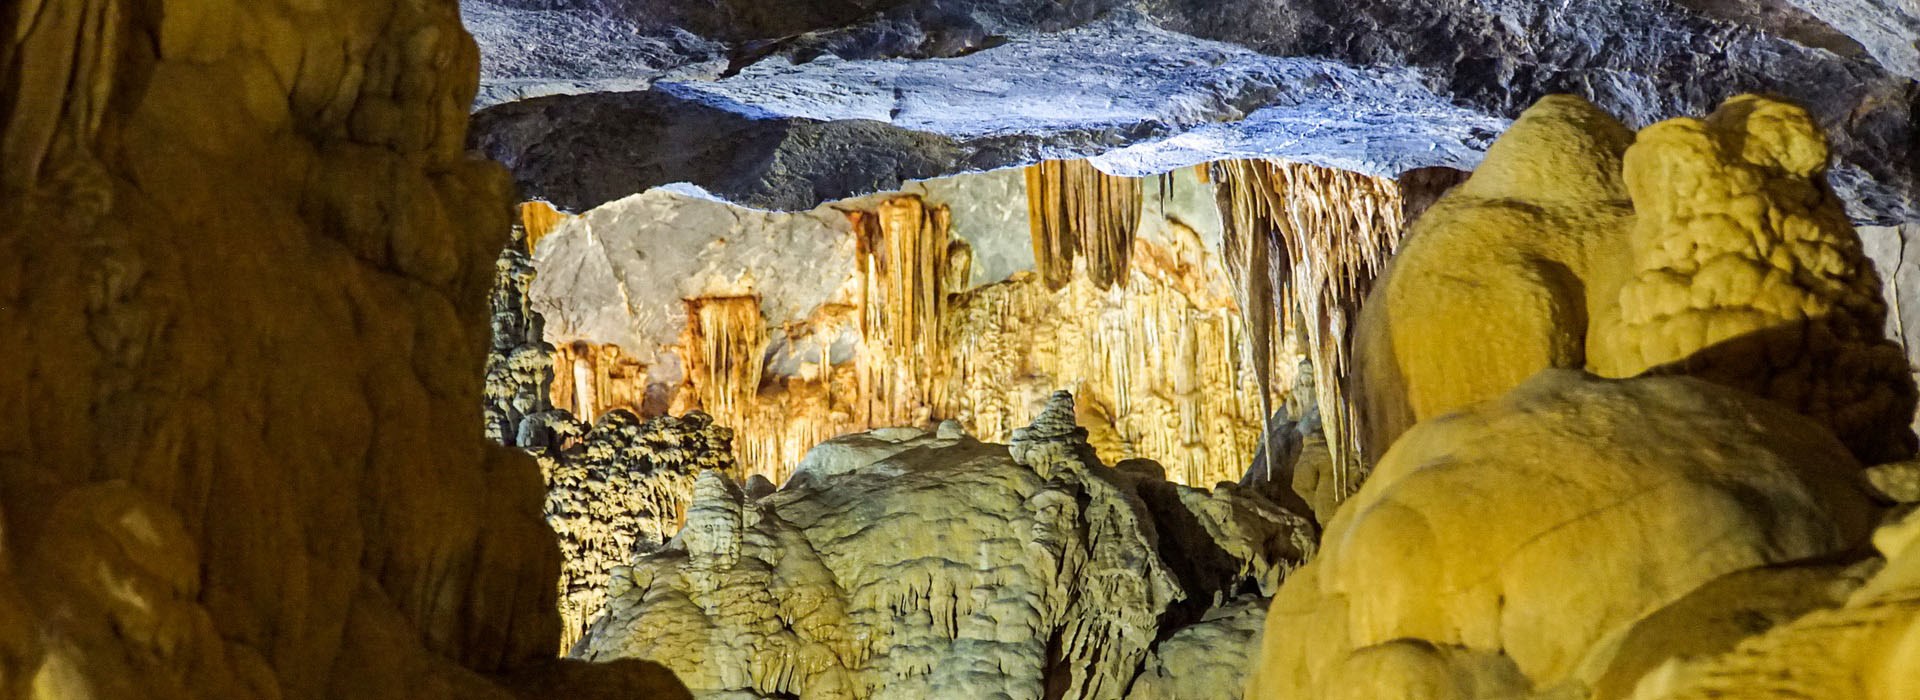 Visiter Les grottes Galaxies - Vietnam